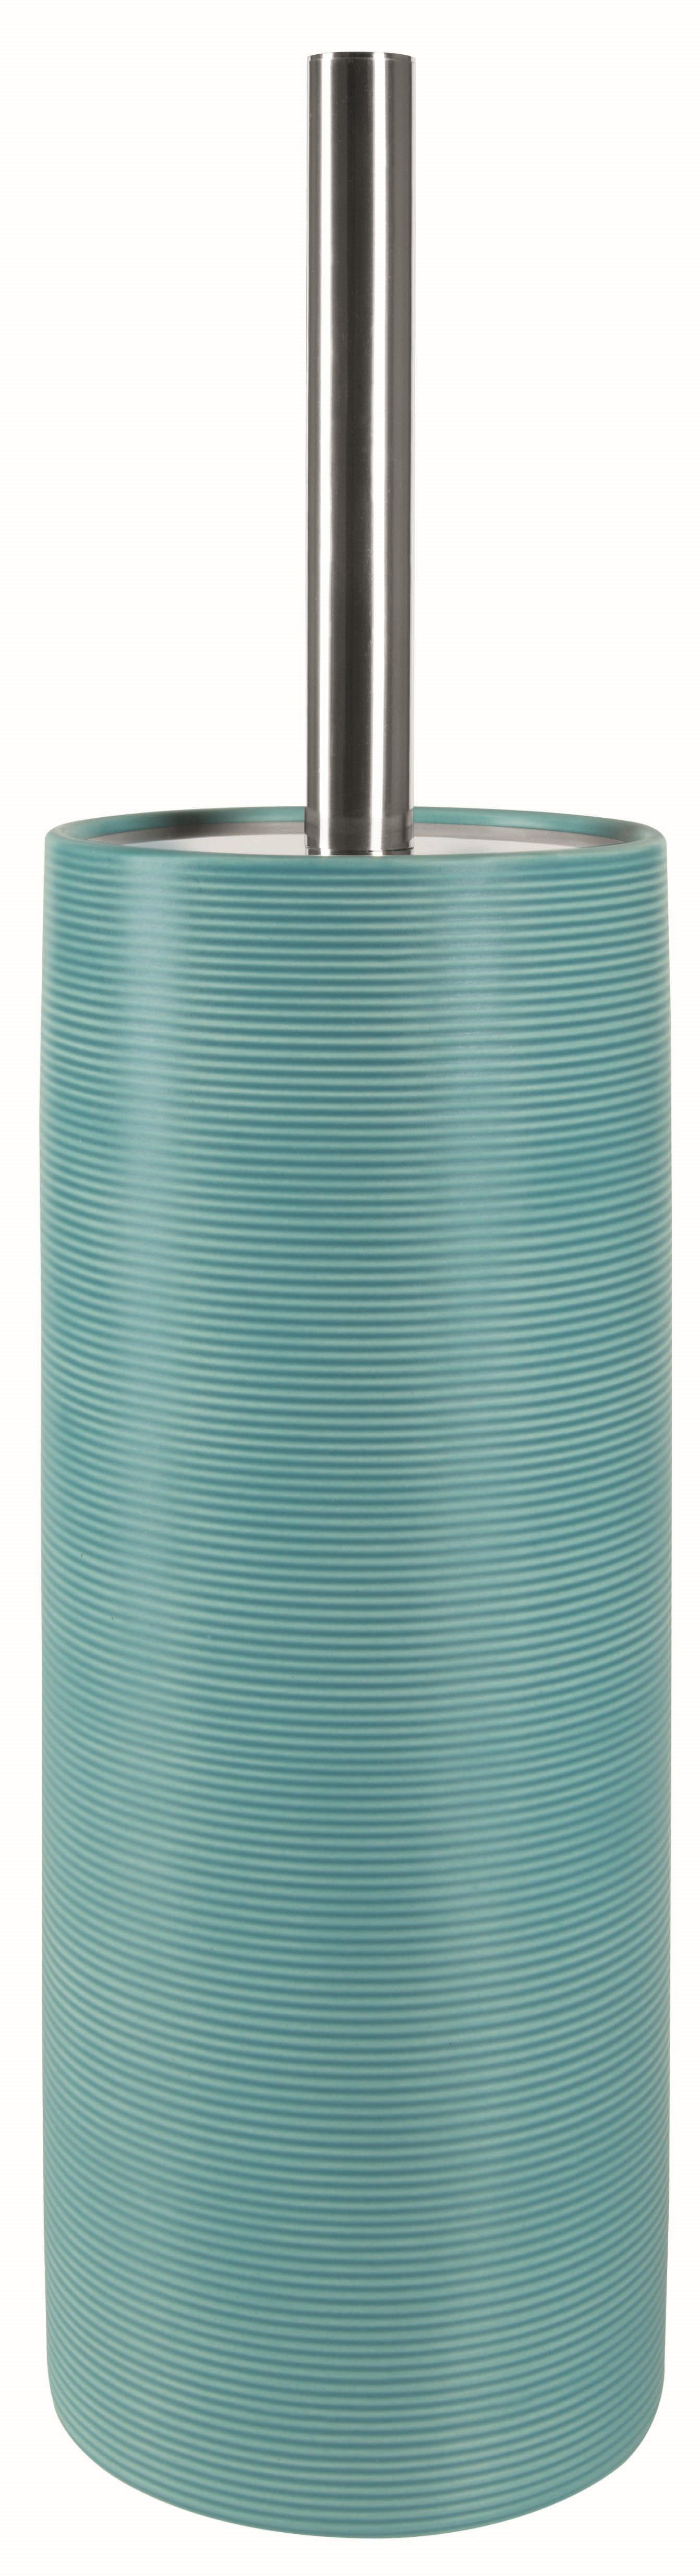 Blaue Toilettenpapierhalter online kaufen | OTTO